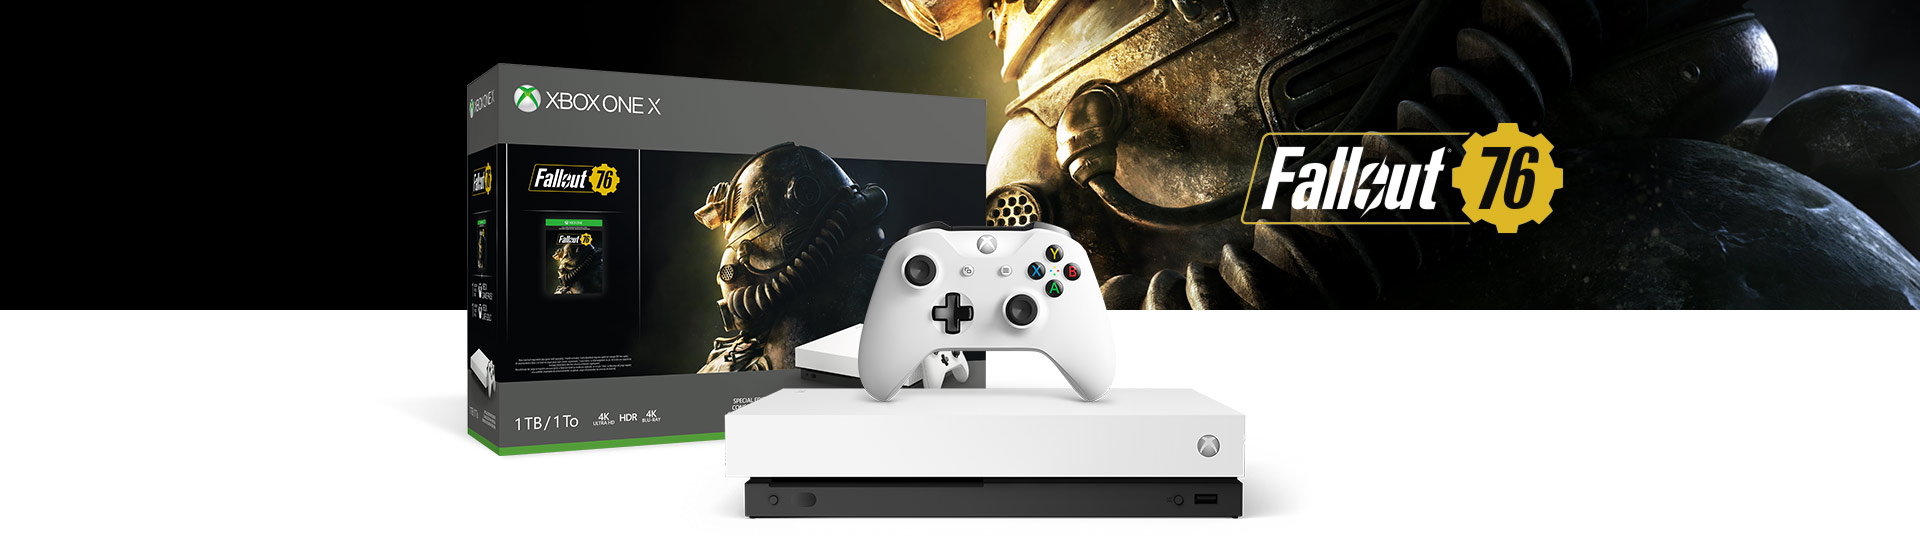 Κονσόλα Xbox One X και χειριστήριο δίπλα σε κουτί προϊόντος Xbox One X Fallout 76 Special Edition 1TB